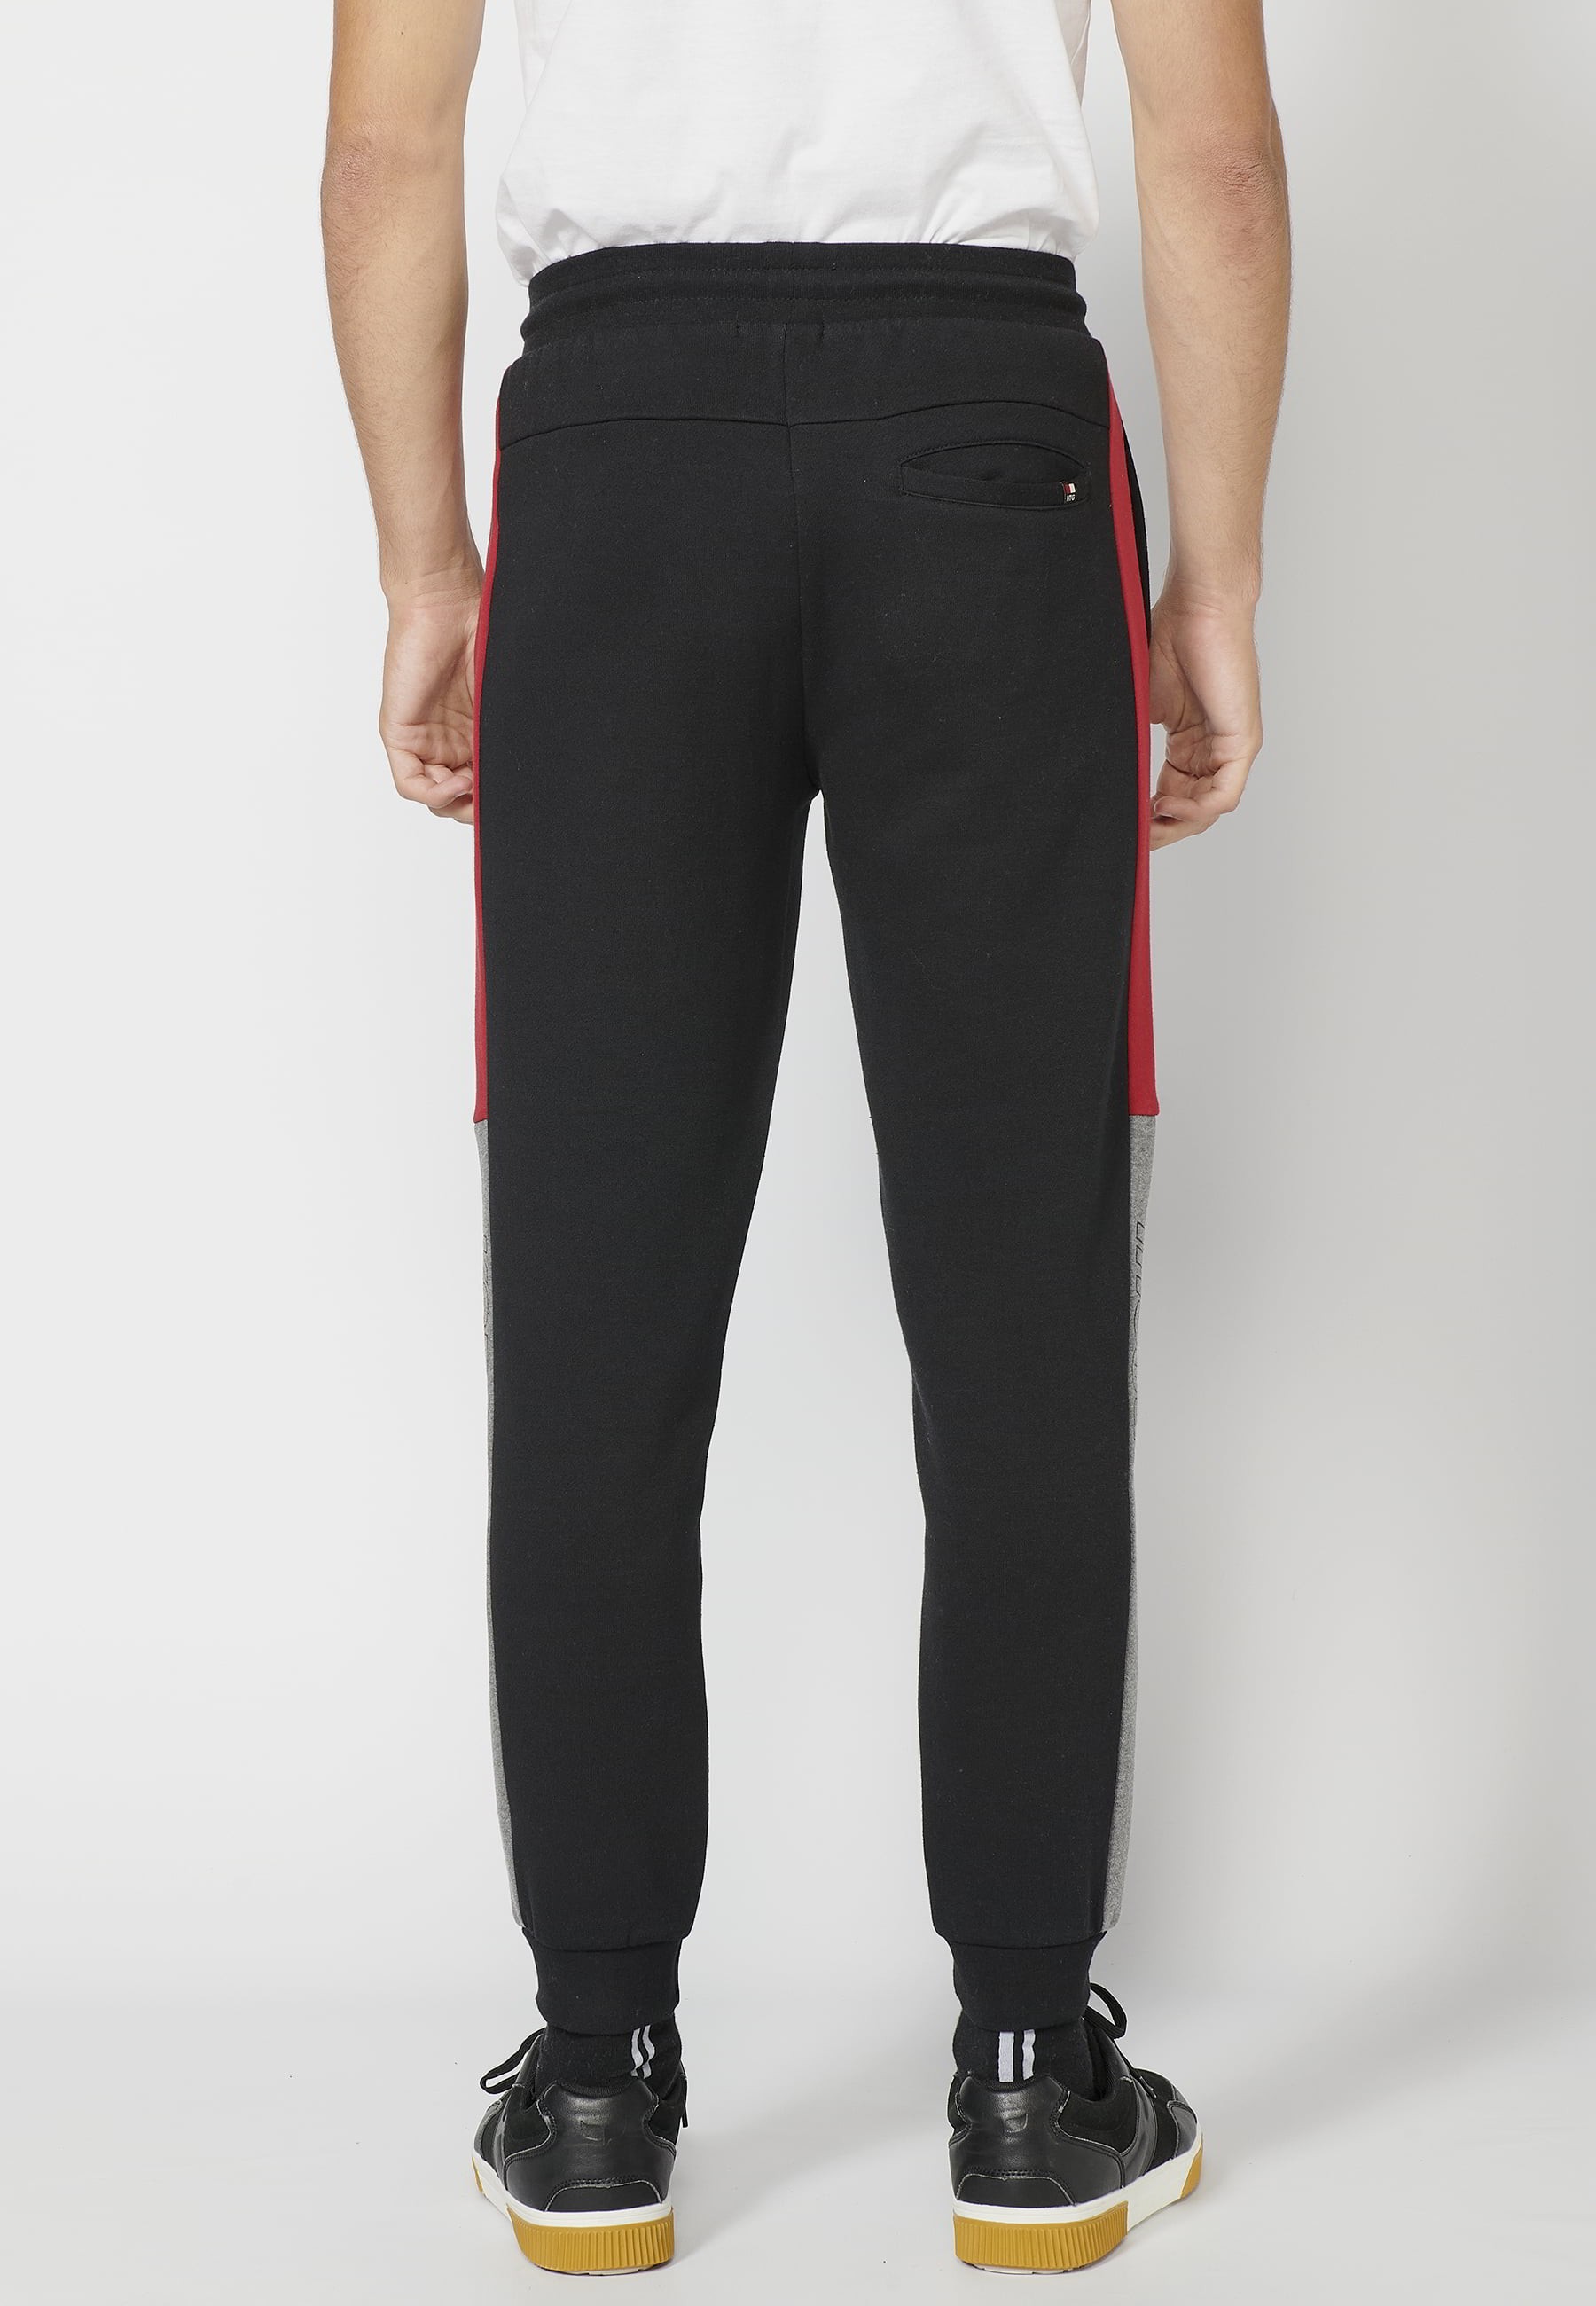 Pantalon de jogging long avec taille élastique réglable, détail latéral, couleur noir pour Homme